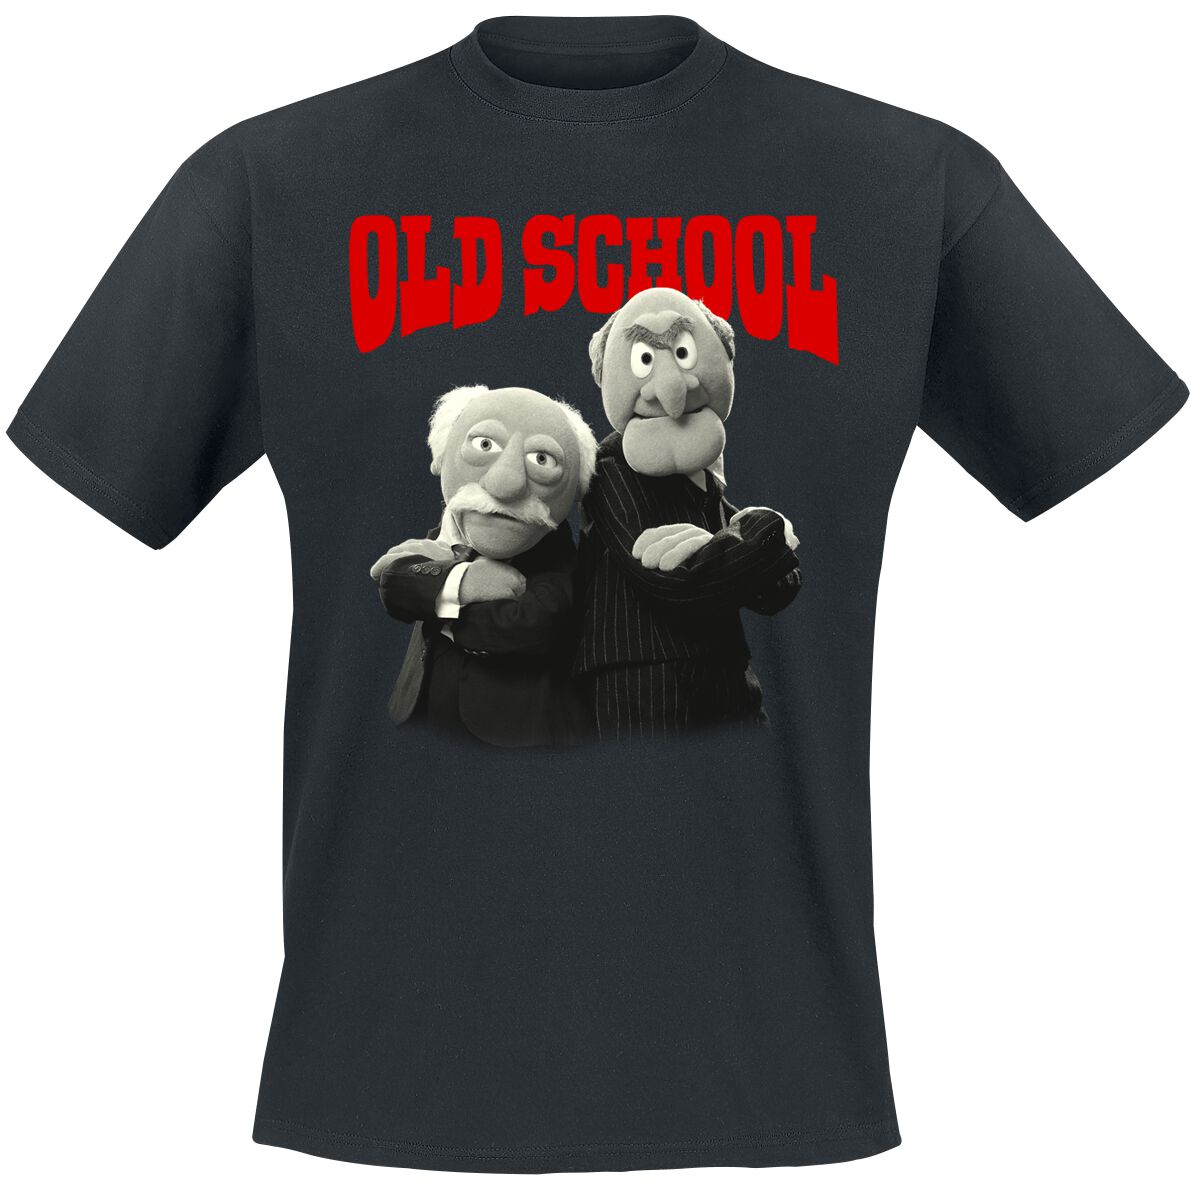 Die Muppets T-Shirt - Old School - 3XL bis 5XL - für Männer - Größe 3XL - schwarz  - Lizenzierter Fanartikel